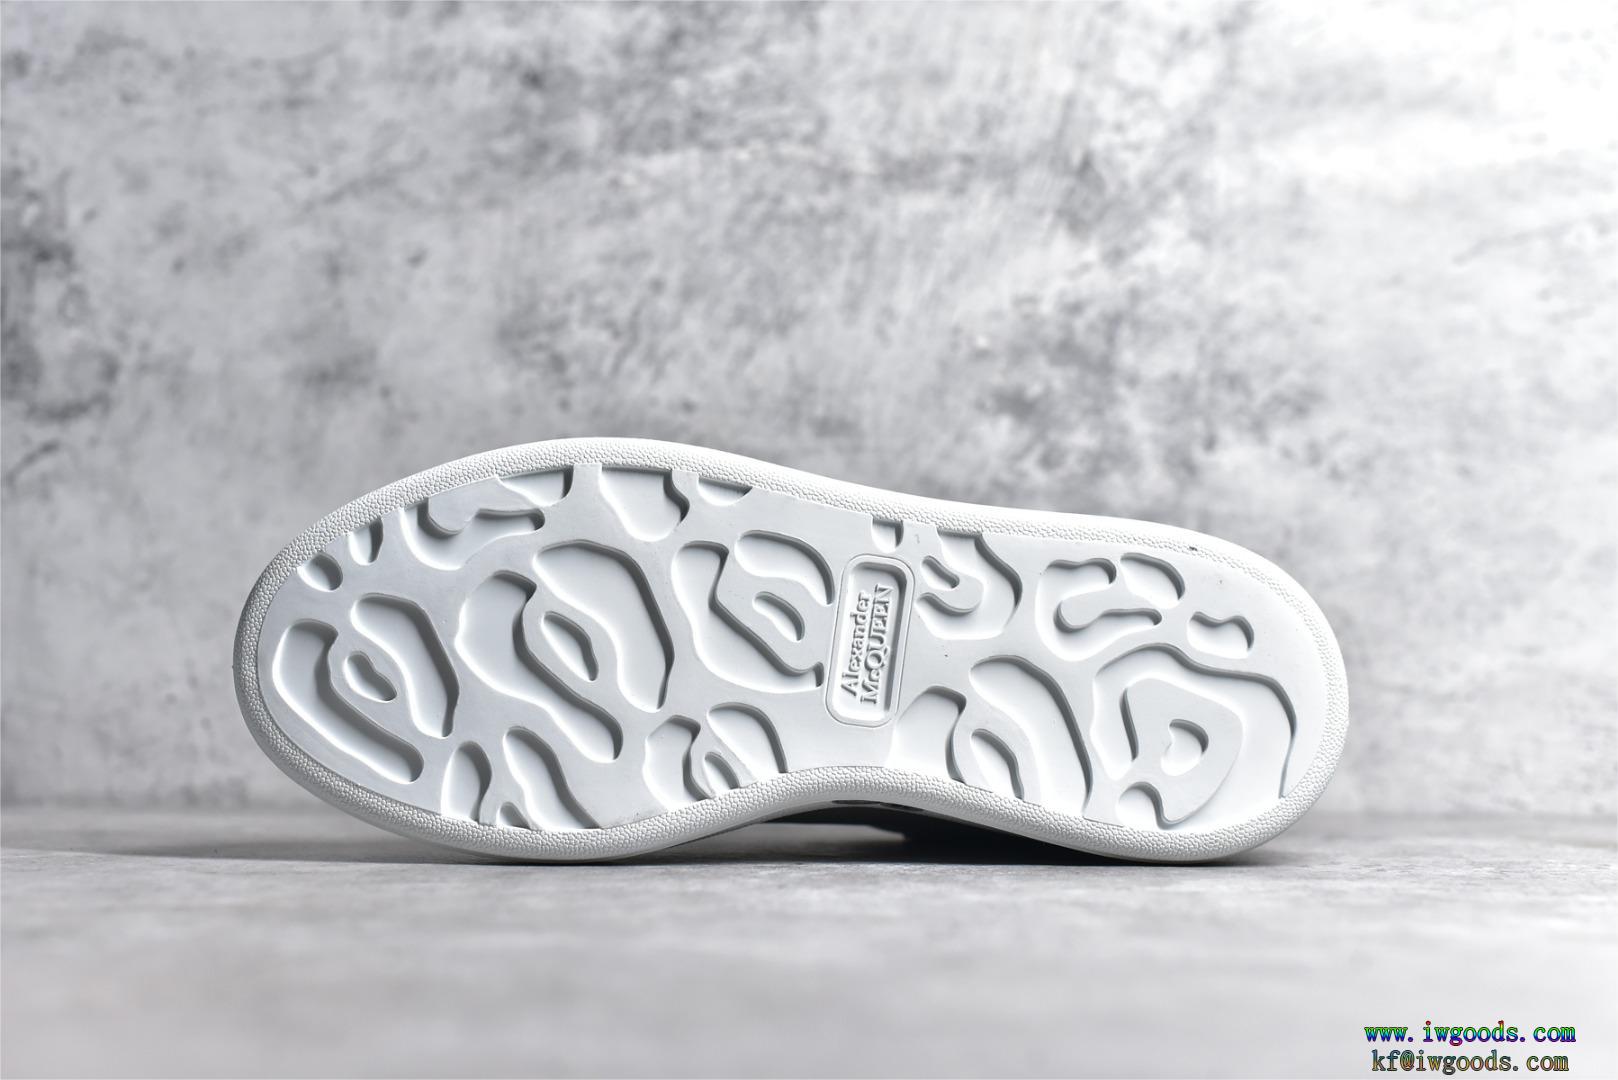 カジュアルシューズ スニーカー 板靴 白い靴暑い夏に軽やかな涼しげ好印象123%Alexander McQueen アレキサンダー・マックイーンブランド 品 コピー